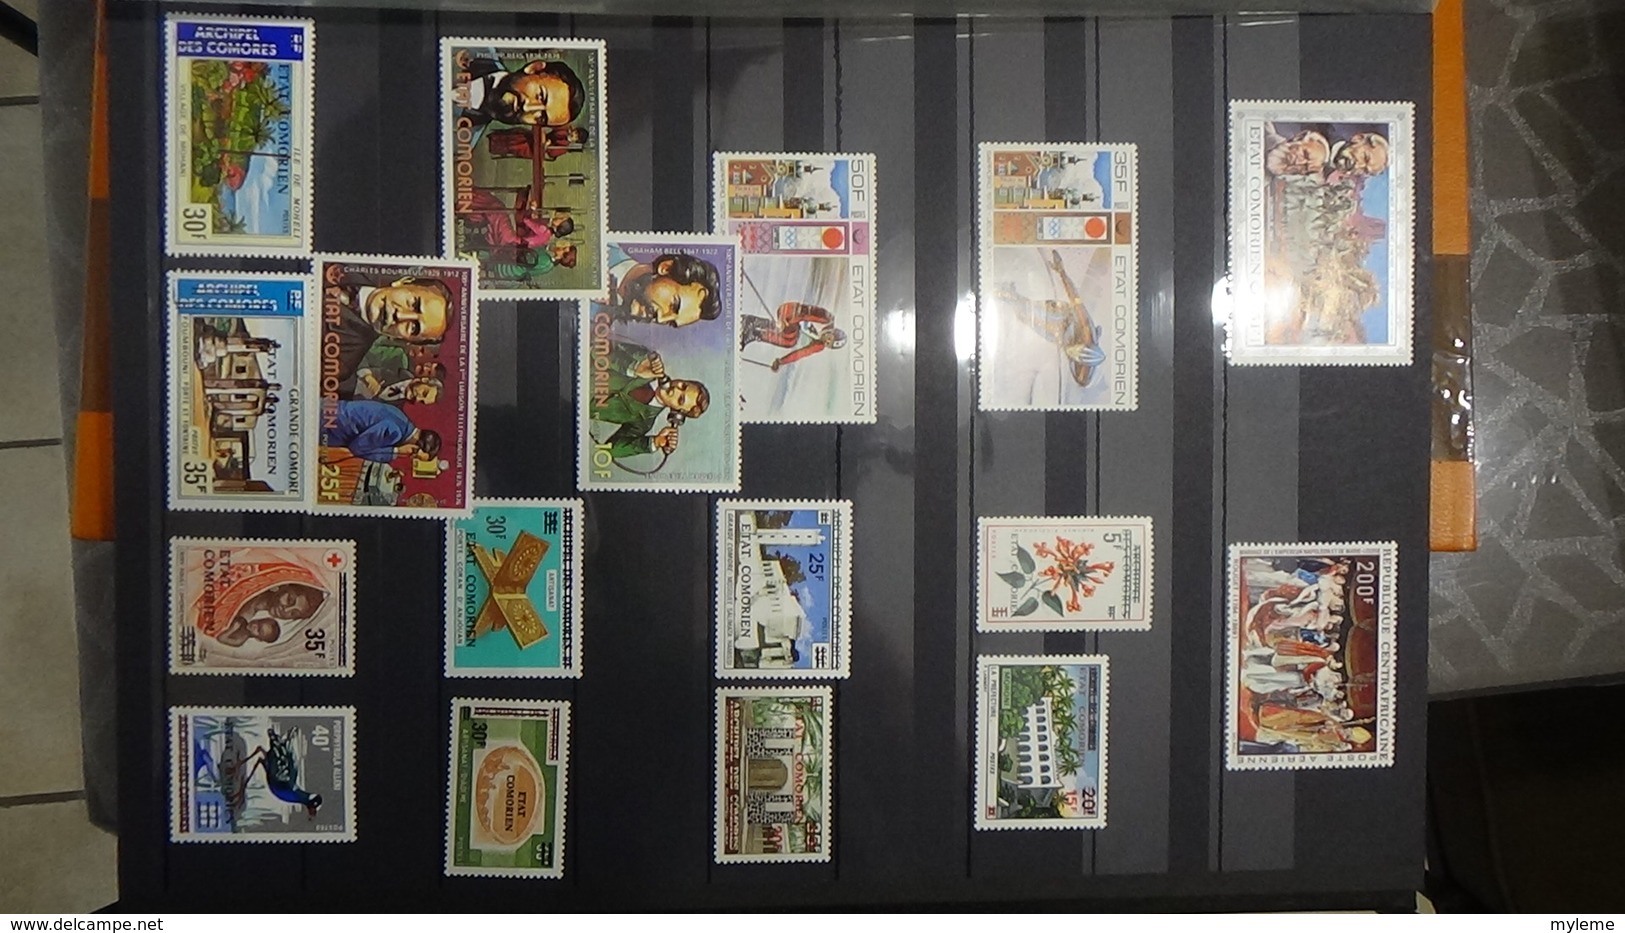 Collection de divers pays d'AFRIQUE timbres et blocs **.  Très sympa !!!